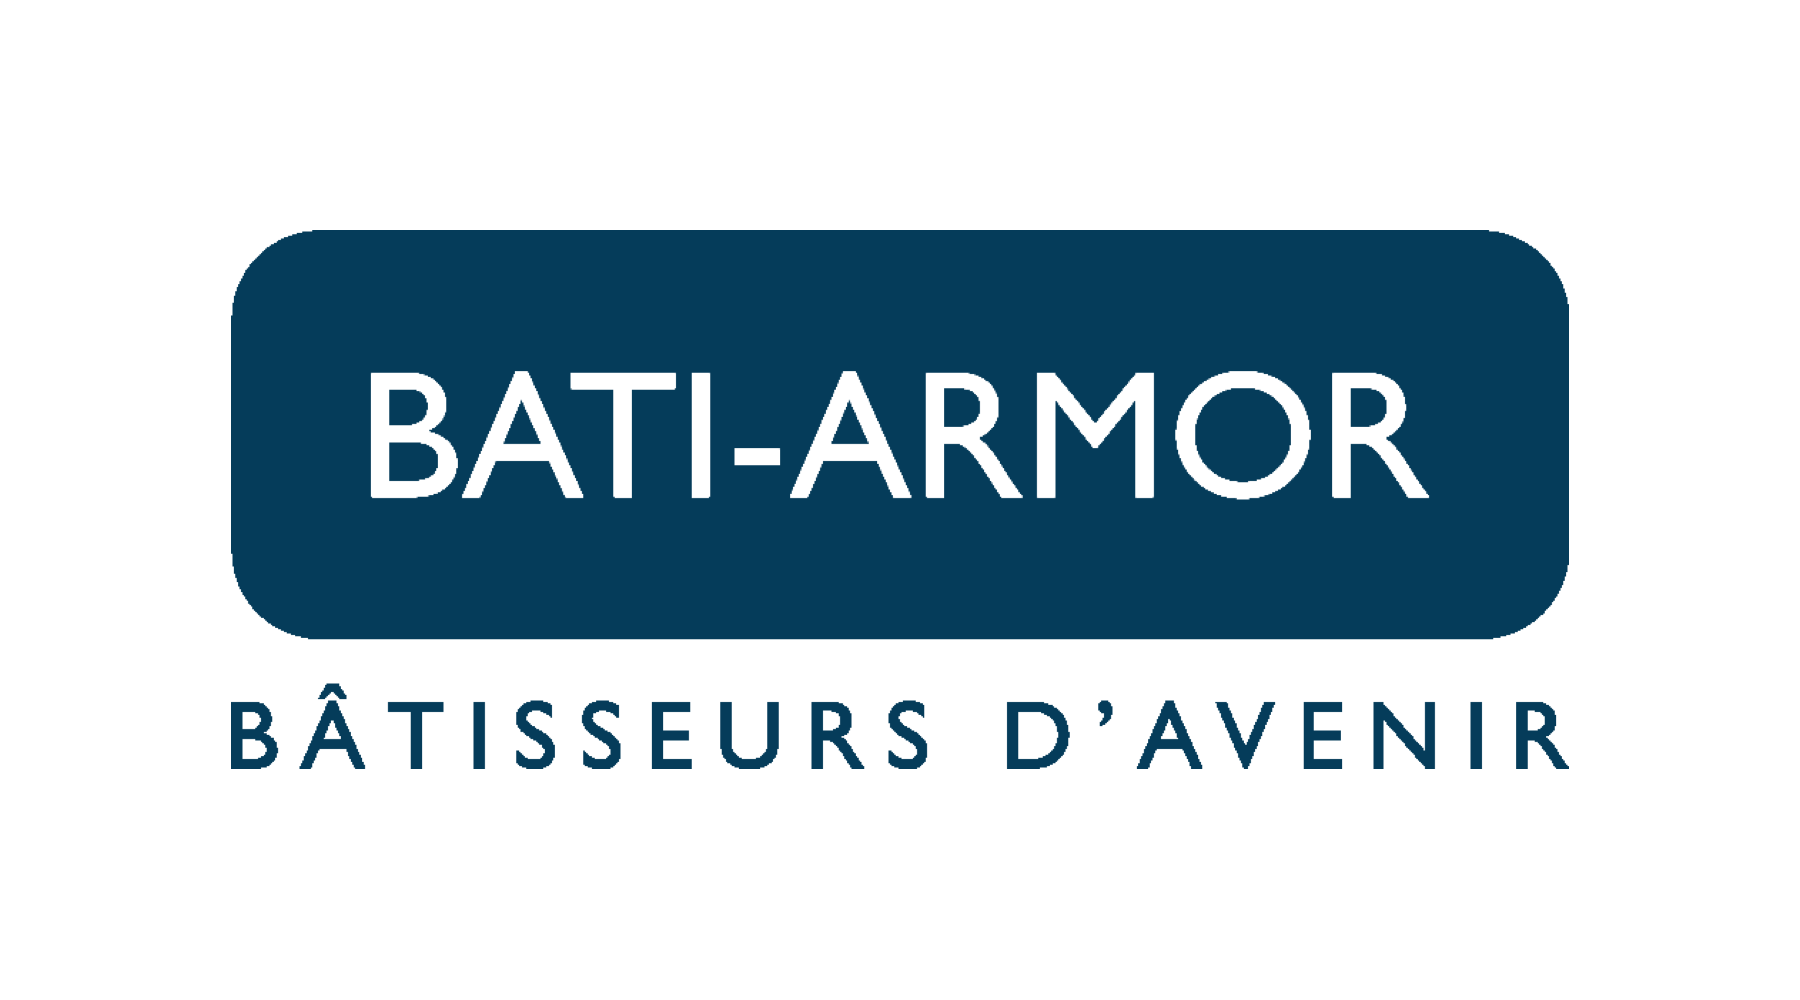 Lancement commercial, BATI-ARMOR le jeudi 22 Septembre 2022 – Témoignage de Manuela Breger, Responsable Communication BATI-ARMOR.